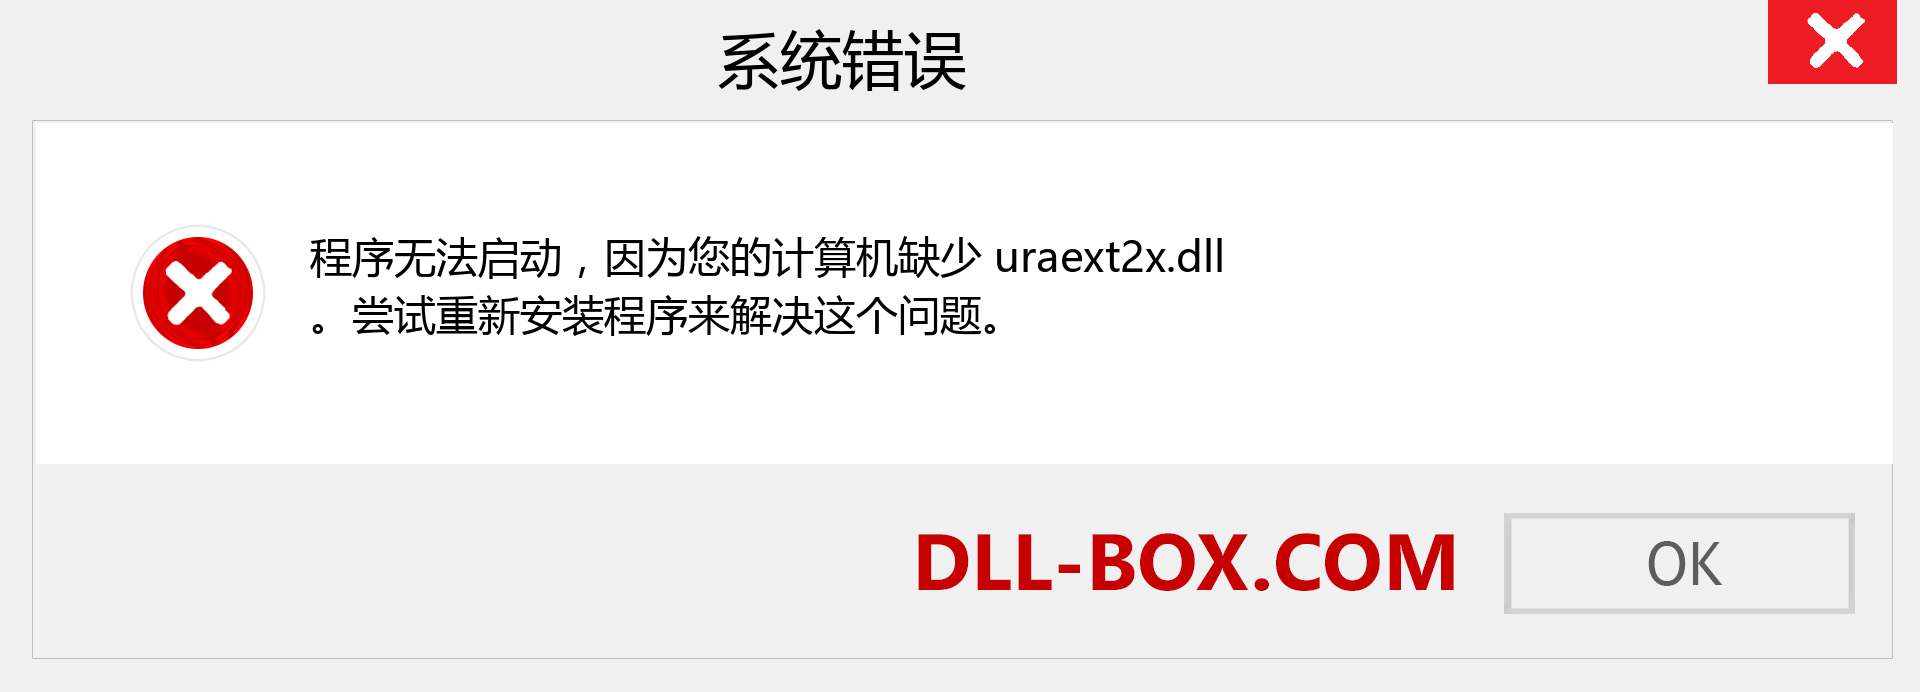 uraext2x.dll 文件丢失？。 适用于 Windows 7、8、10 的下载 - 修复 Windows、照片、图像上的 uraext2x dll 丢失错误